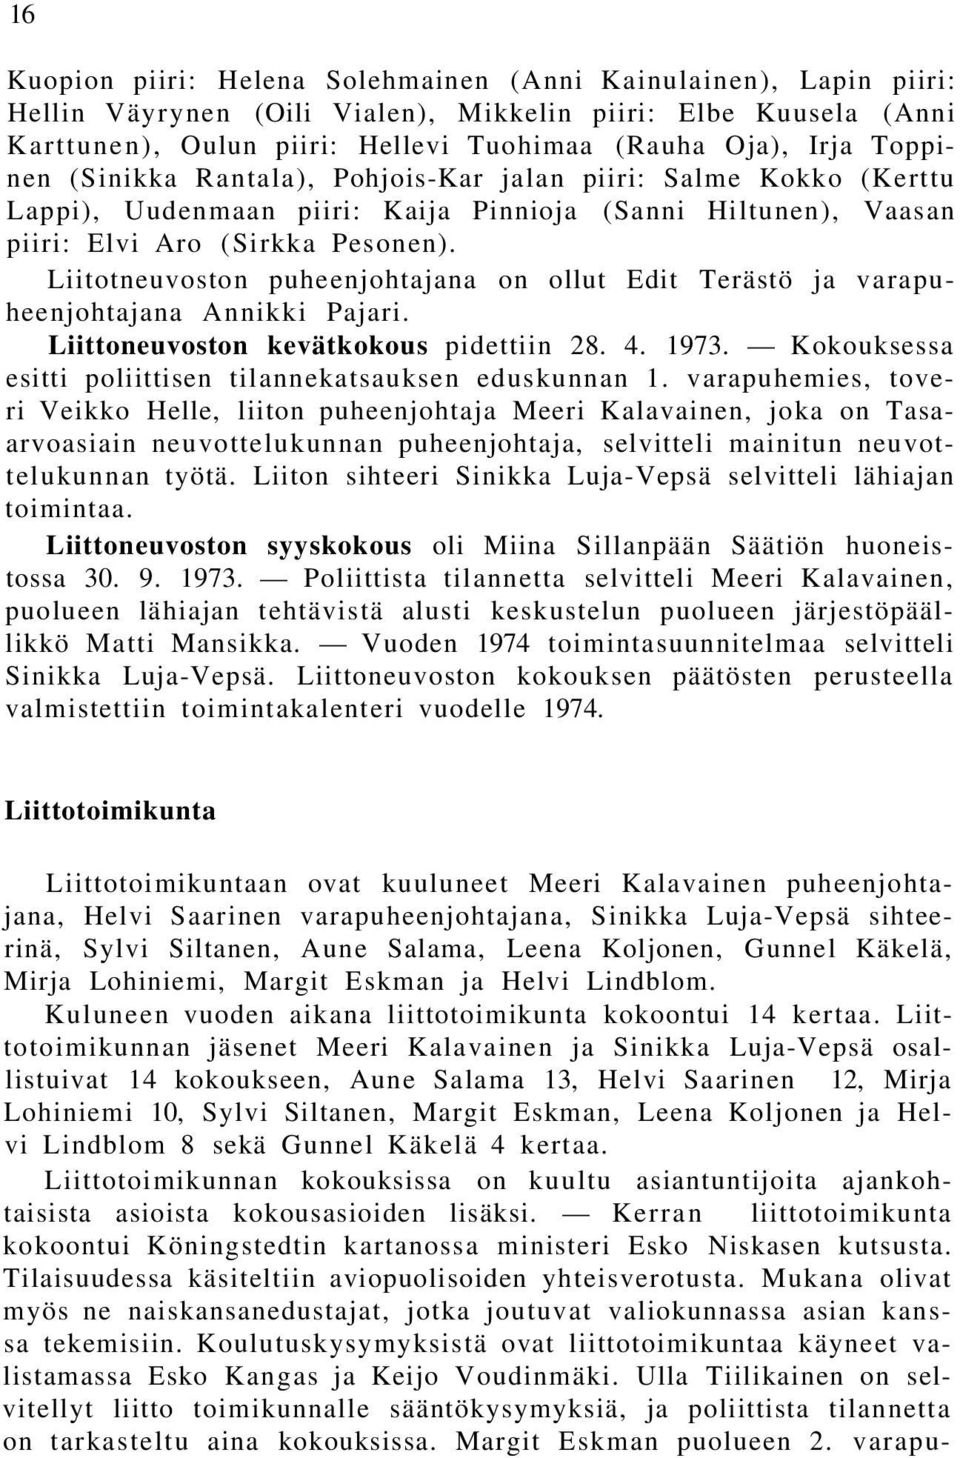 Liitotneuvoston puheenjohtajana on ollut Edit Terästö ja varapuheenjohtajana Annikki Pajari. Liittoneuvoston kevätkokous pidettiin 28. 4. 1973.